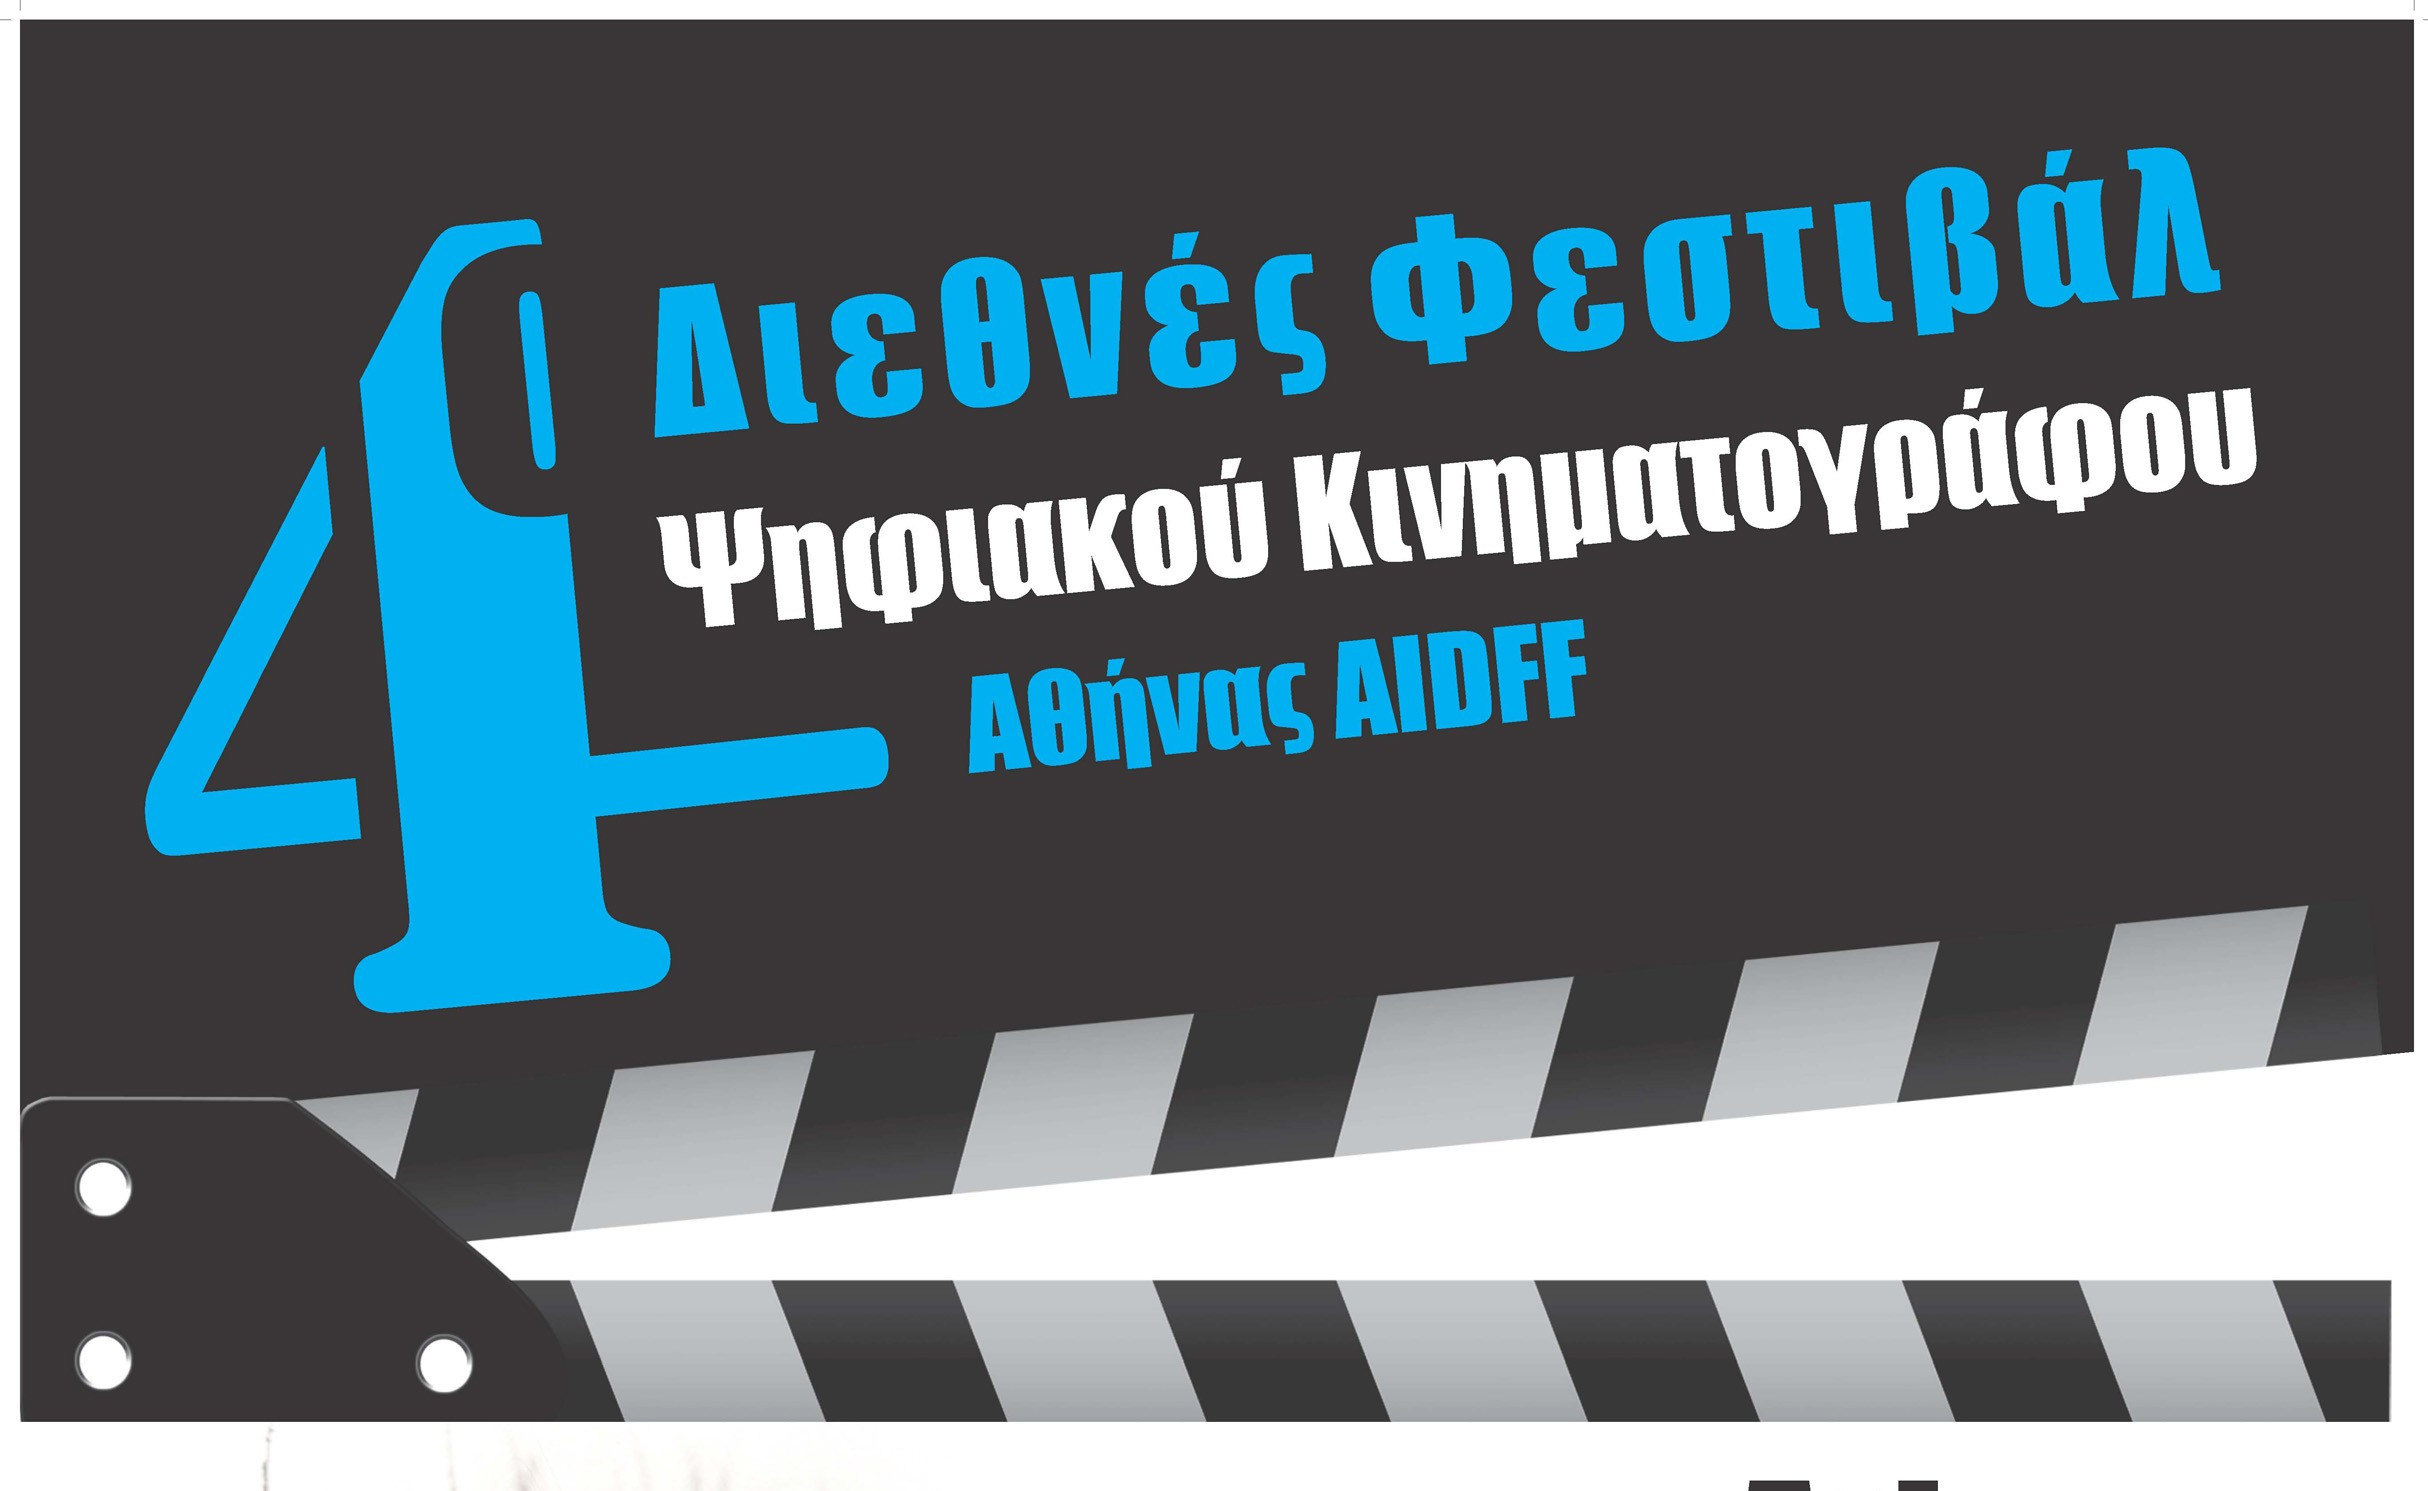 Αφιέρωμα στο 4ο Φεστιβάλ Ψηφιακού Κινηματογράφου Αθήνας